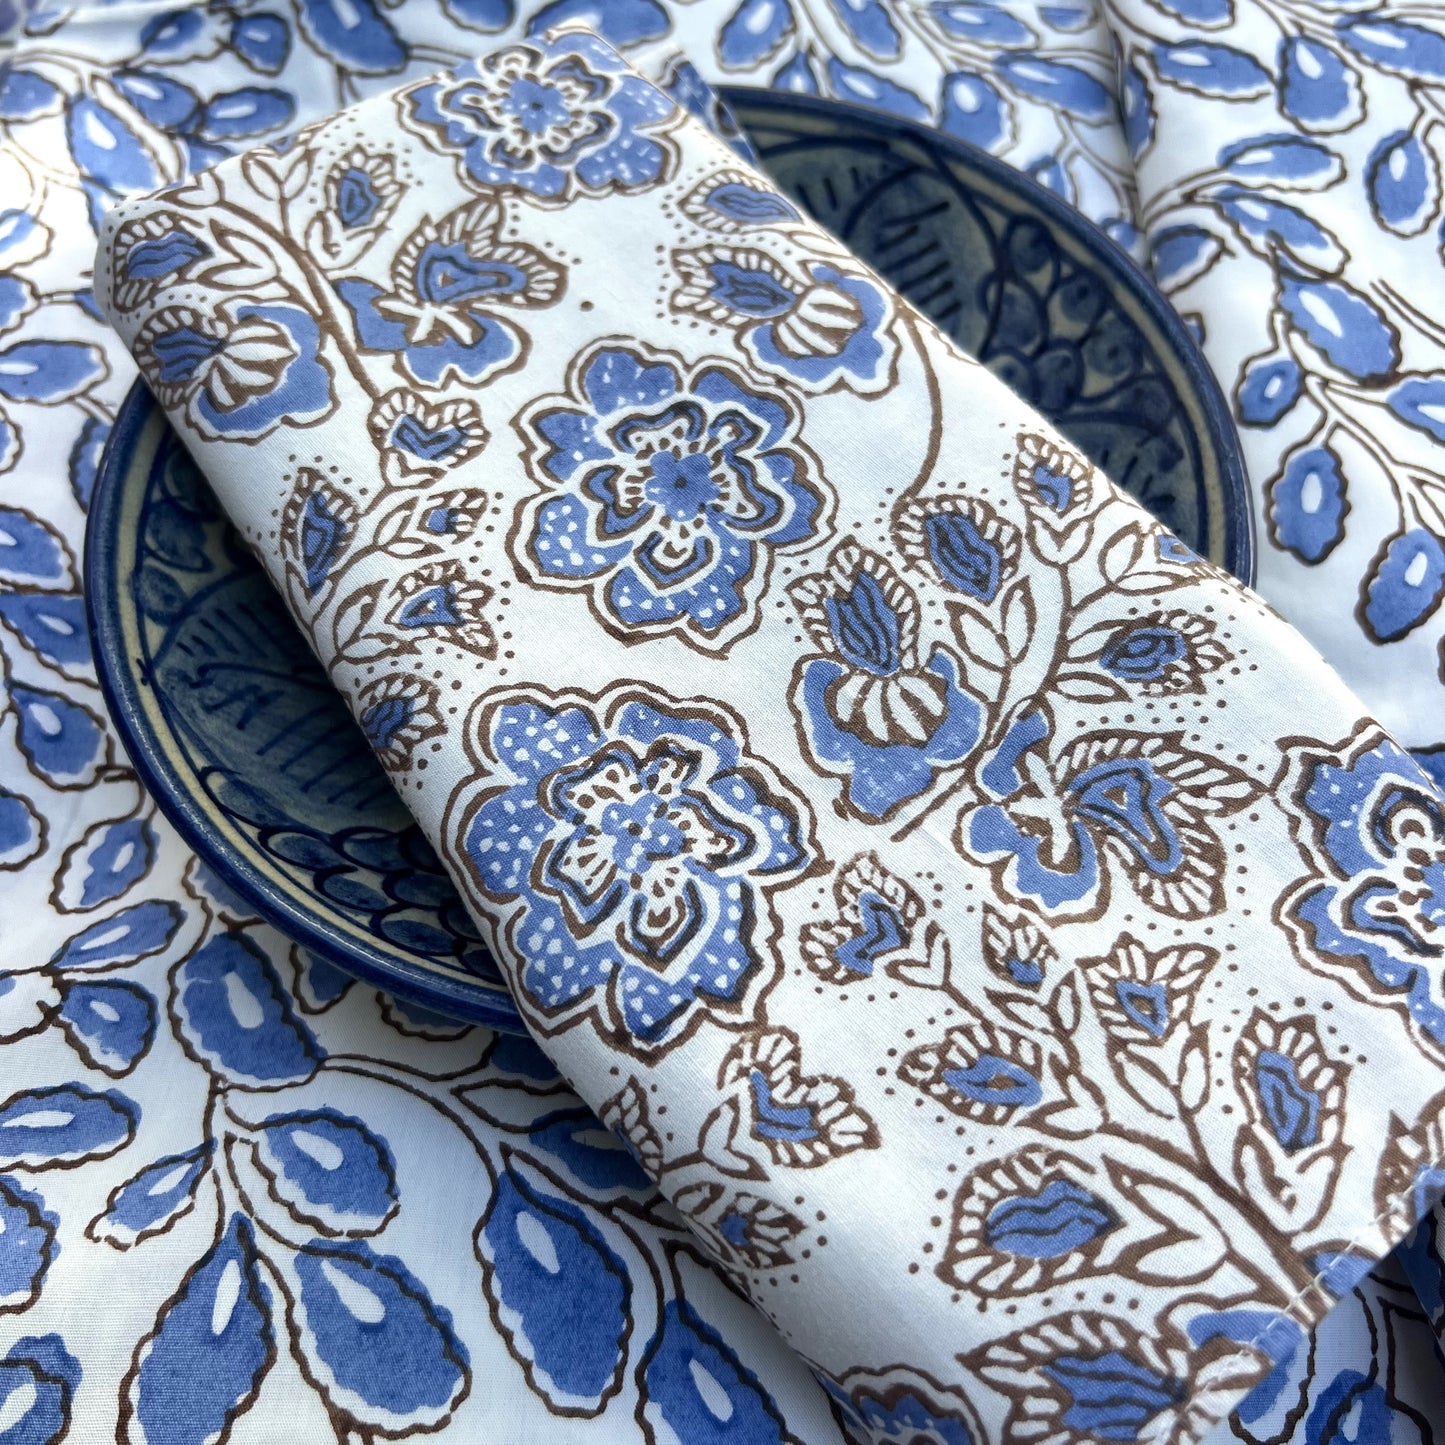 4 x bandana print cotton napkin blue, choc & white